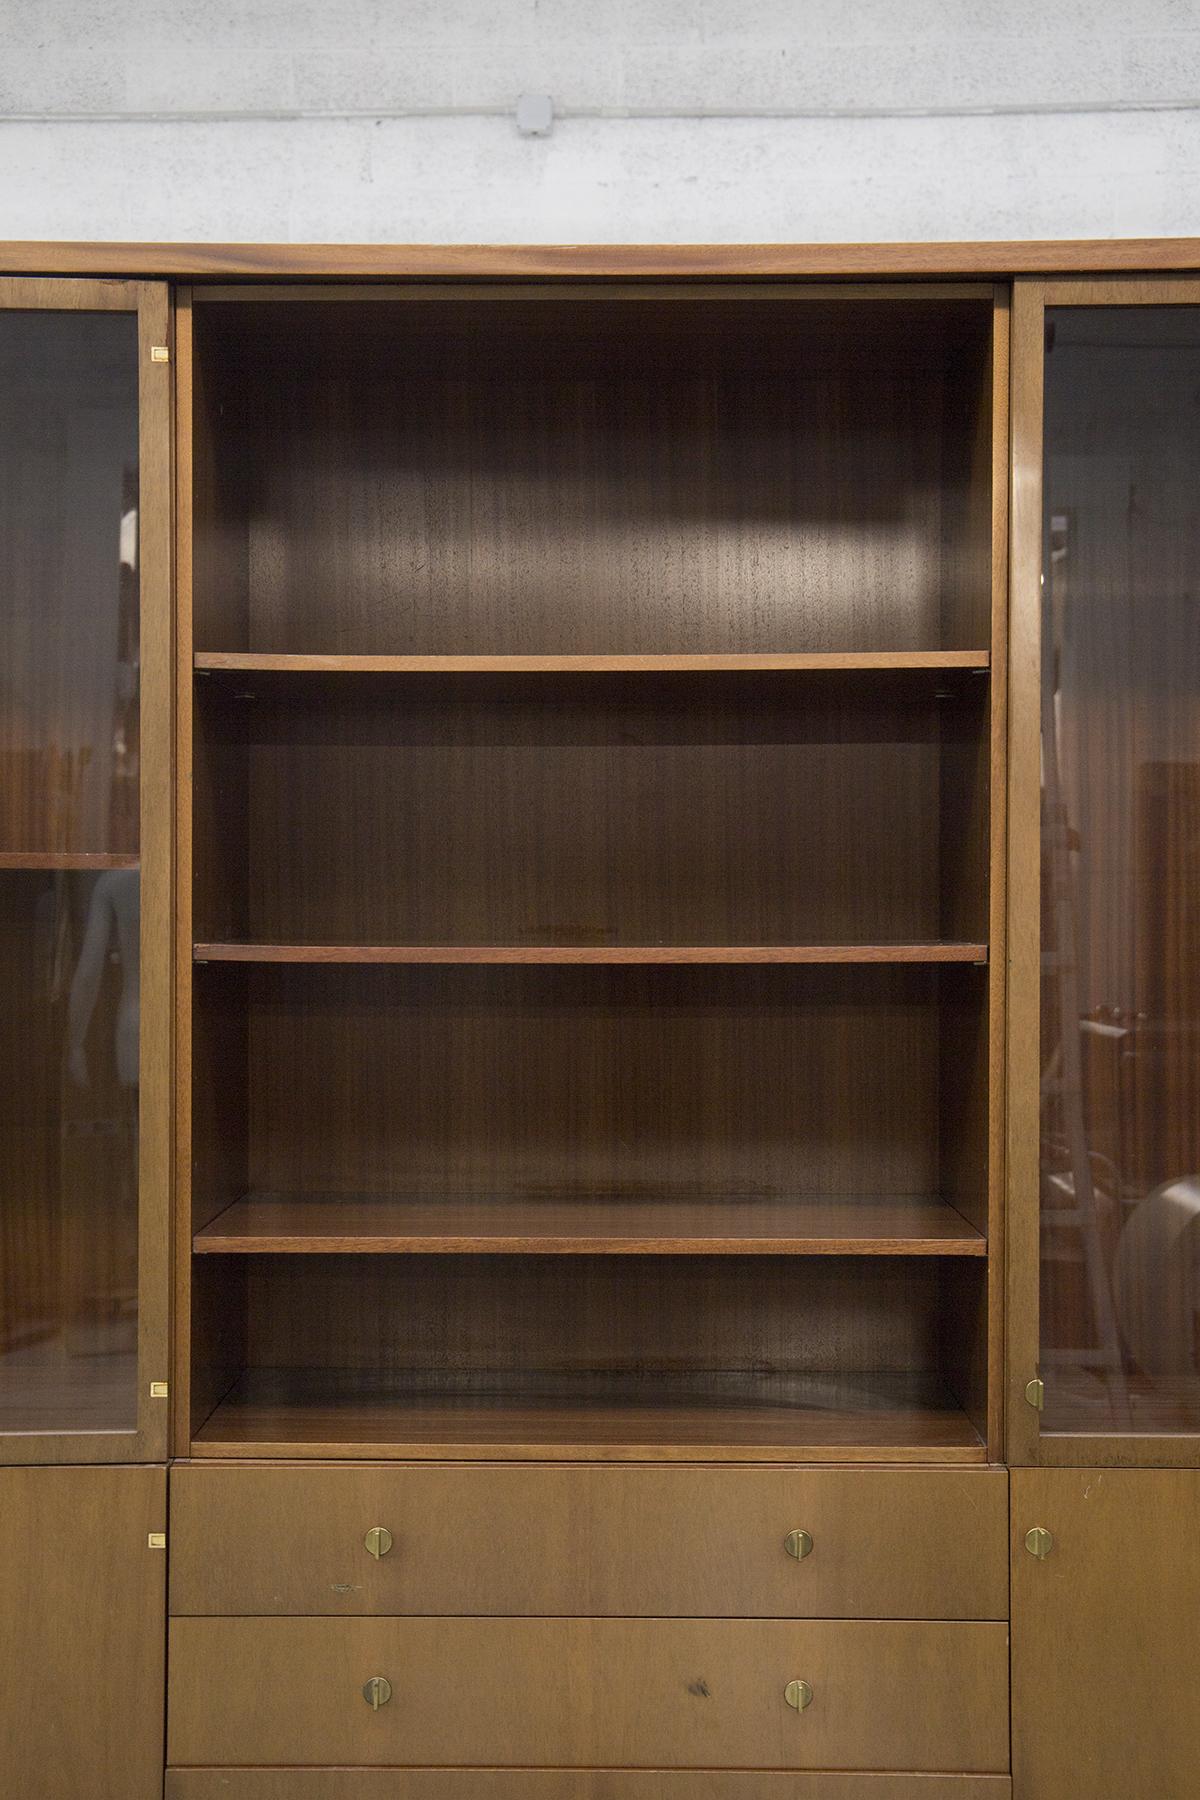 Wunderschönes Vintage-Bücherregal aus Holz, entworfen von Pierre Balmain in den 80er Jahren, feine französische Handwerkskunst. 
Das Vintage-Bücherregal ist komplett aus Holz gefertigt und hat eine rechteckige Form. Sie besteht aus zwei Vitrinen an